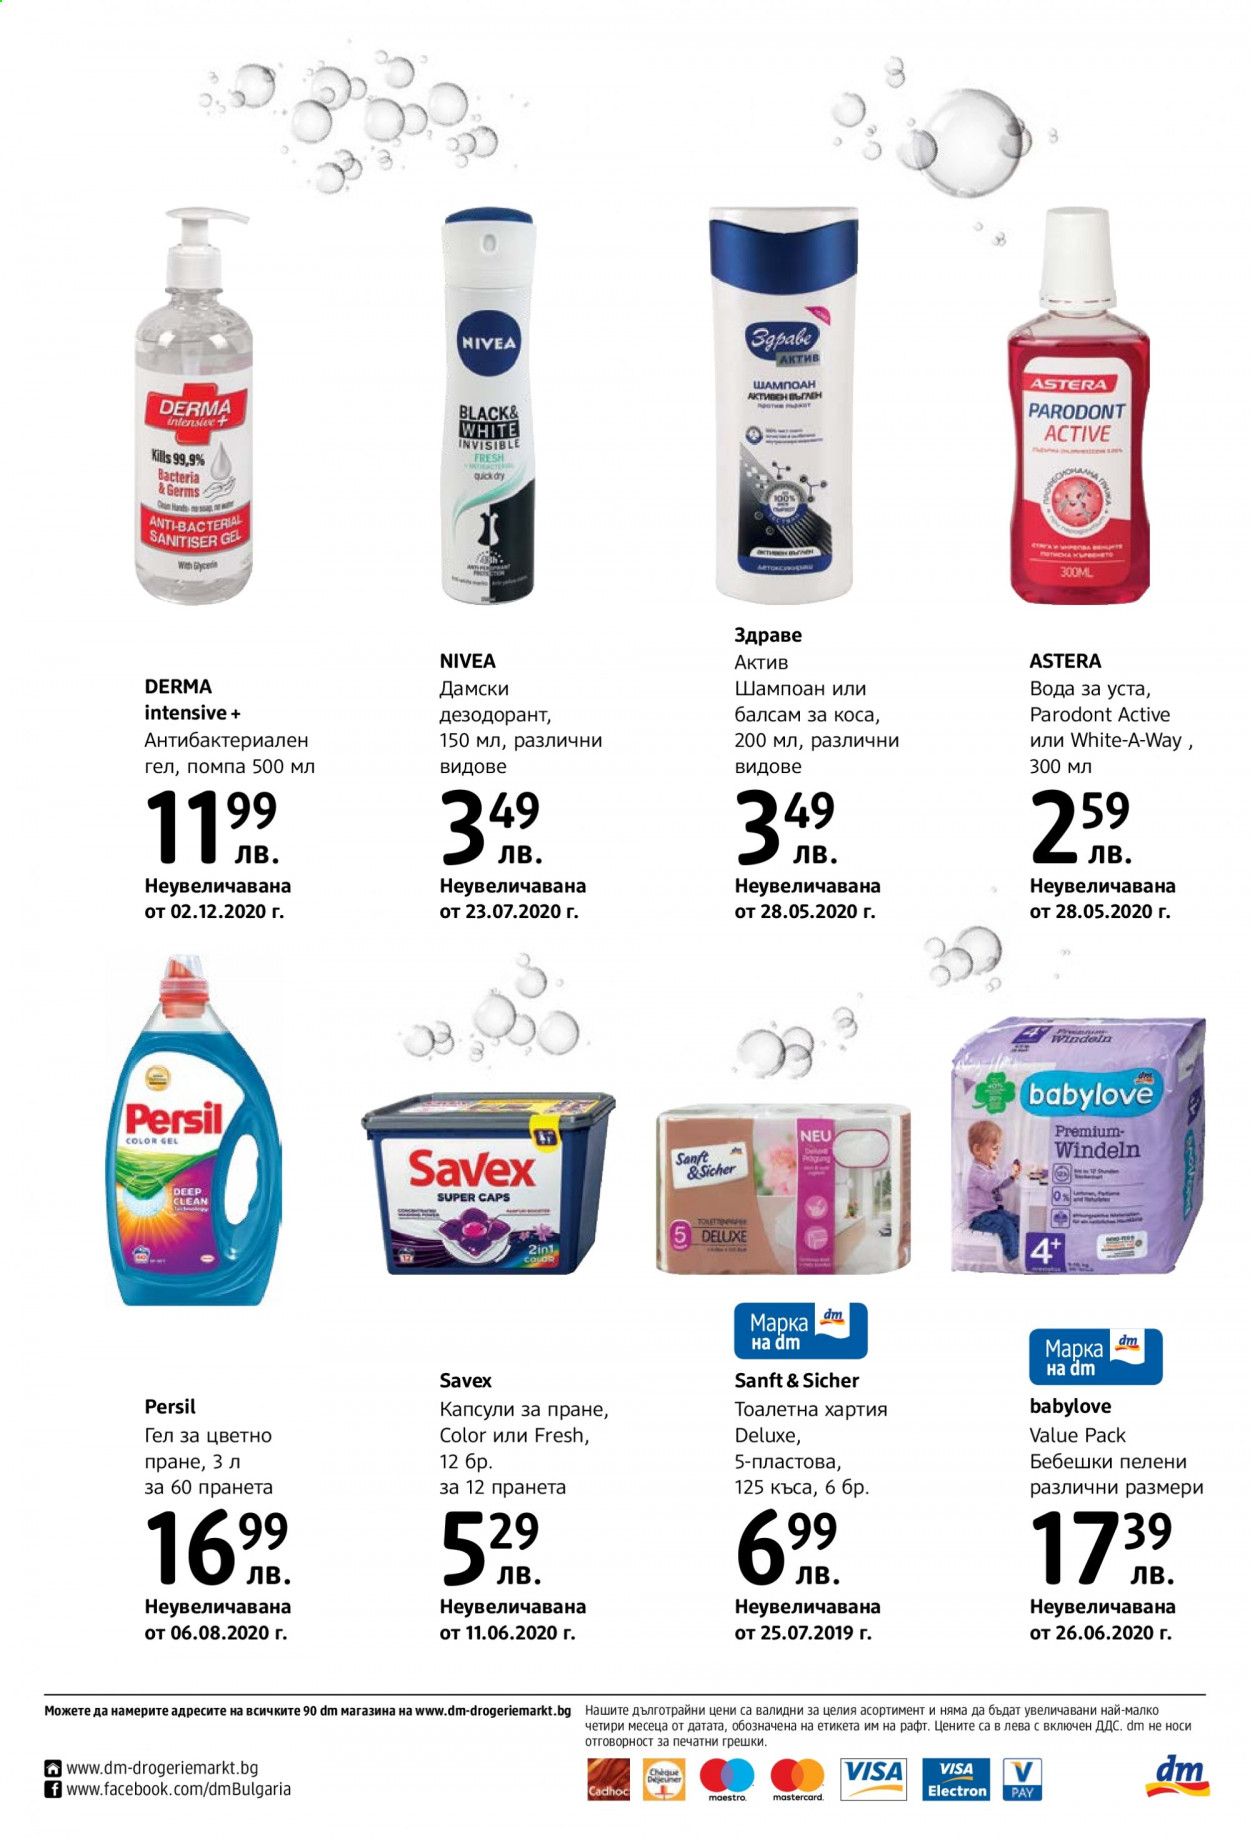 thumbnail - Брошура на dm - Продавани продукти - бебешки пелени, пелени, Nivea, тоалетна хартия, капсули за пране, Persil, Savex, вода за уста, балсам, шампоан. Страница 16.